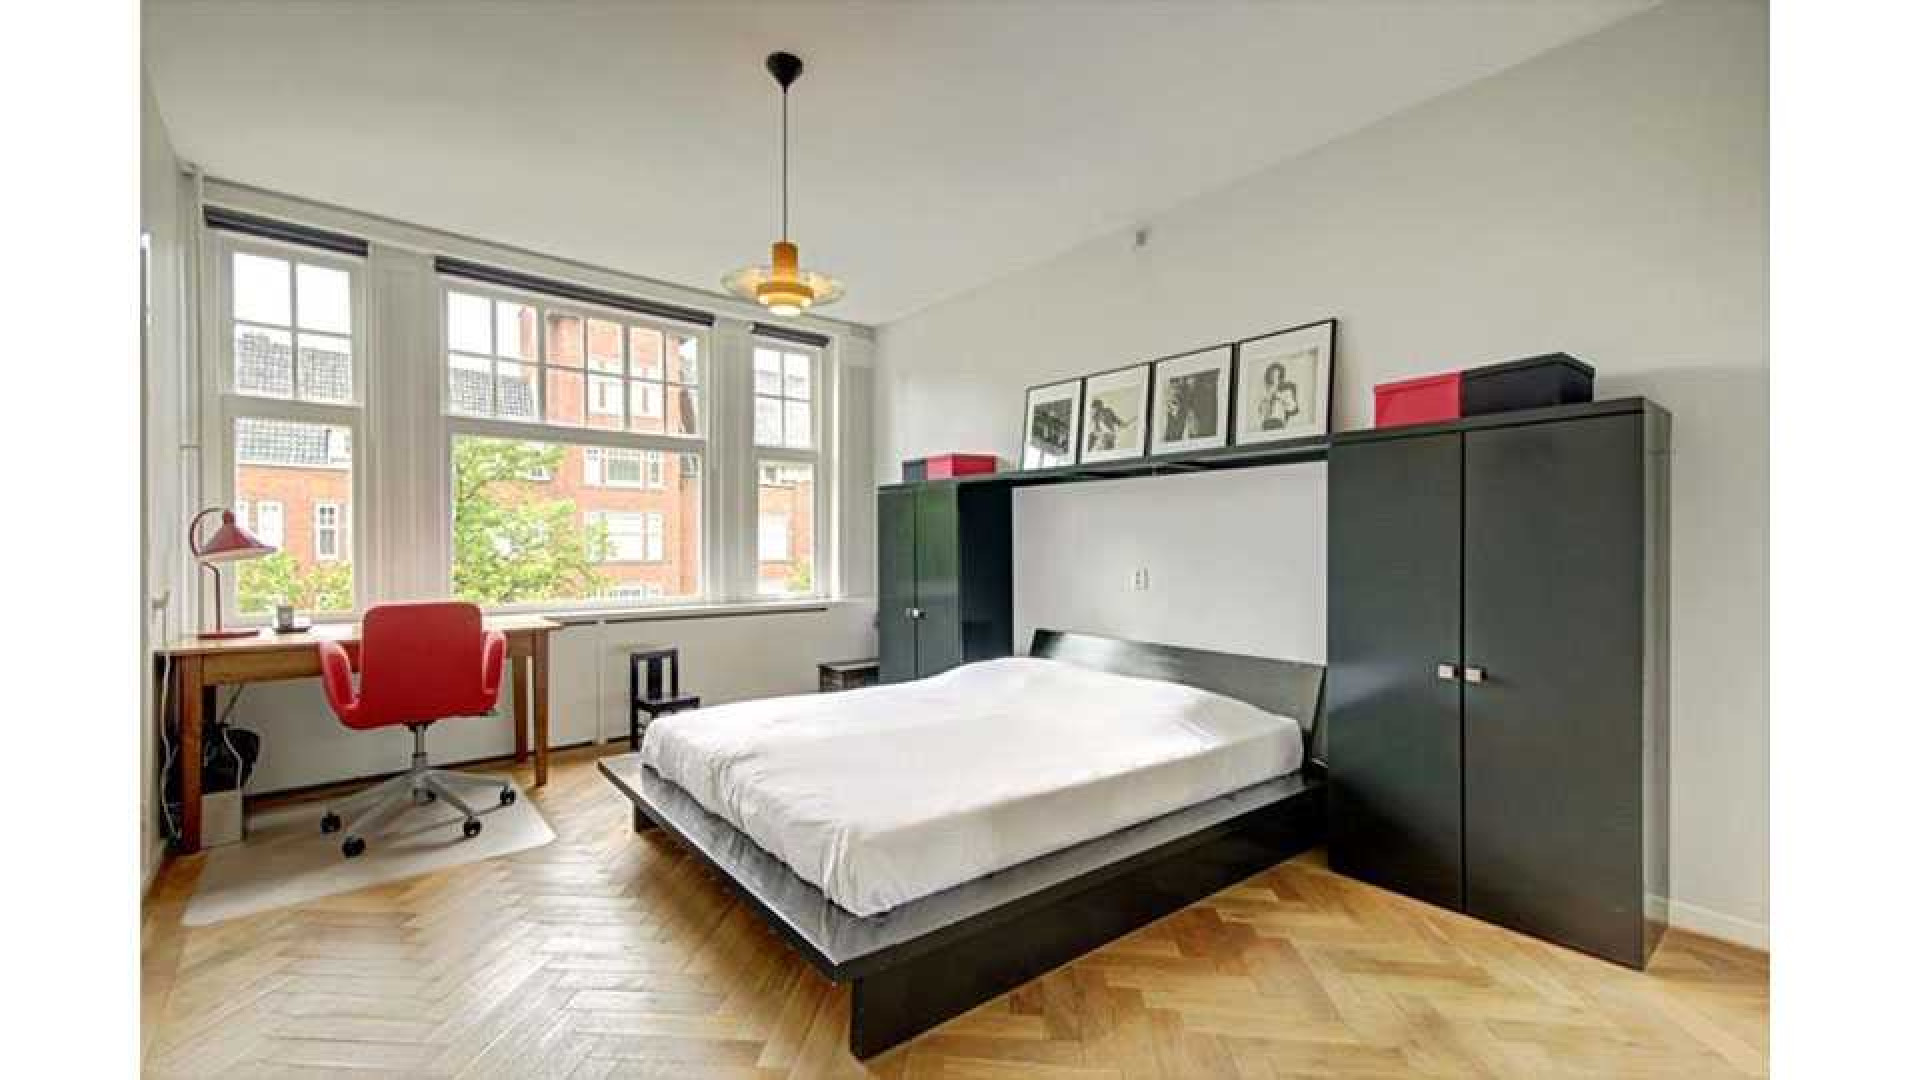 Flikken Maastricht acteur Victor Reinier koopt luxe appartement in Amsterdam Zuid. Zie foto's 9